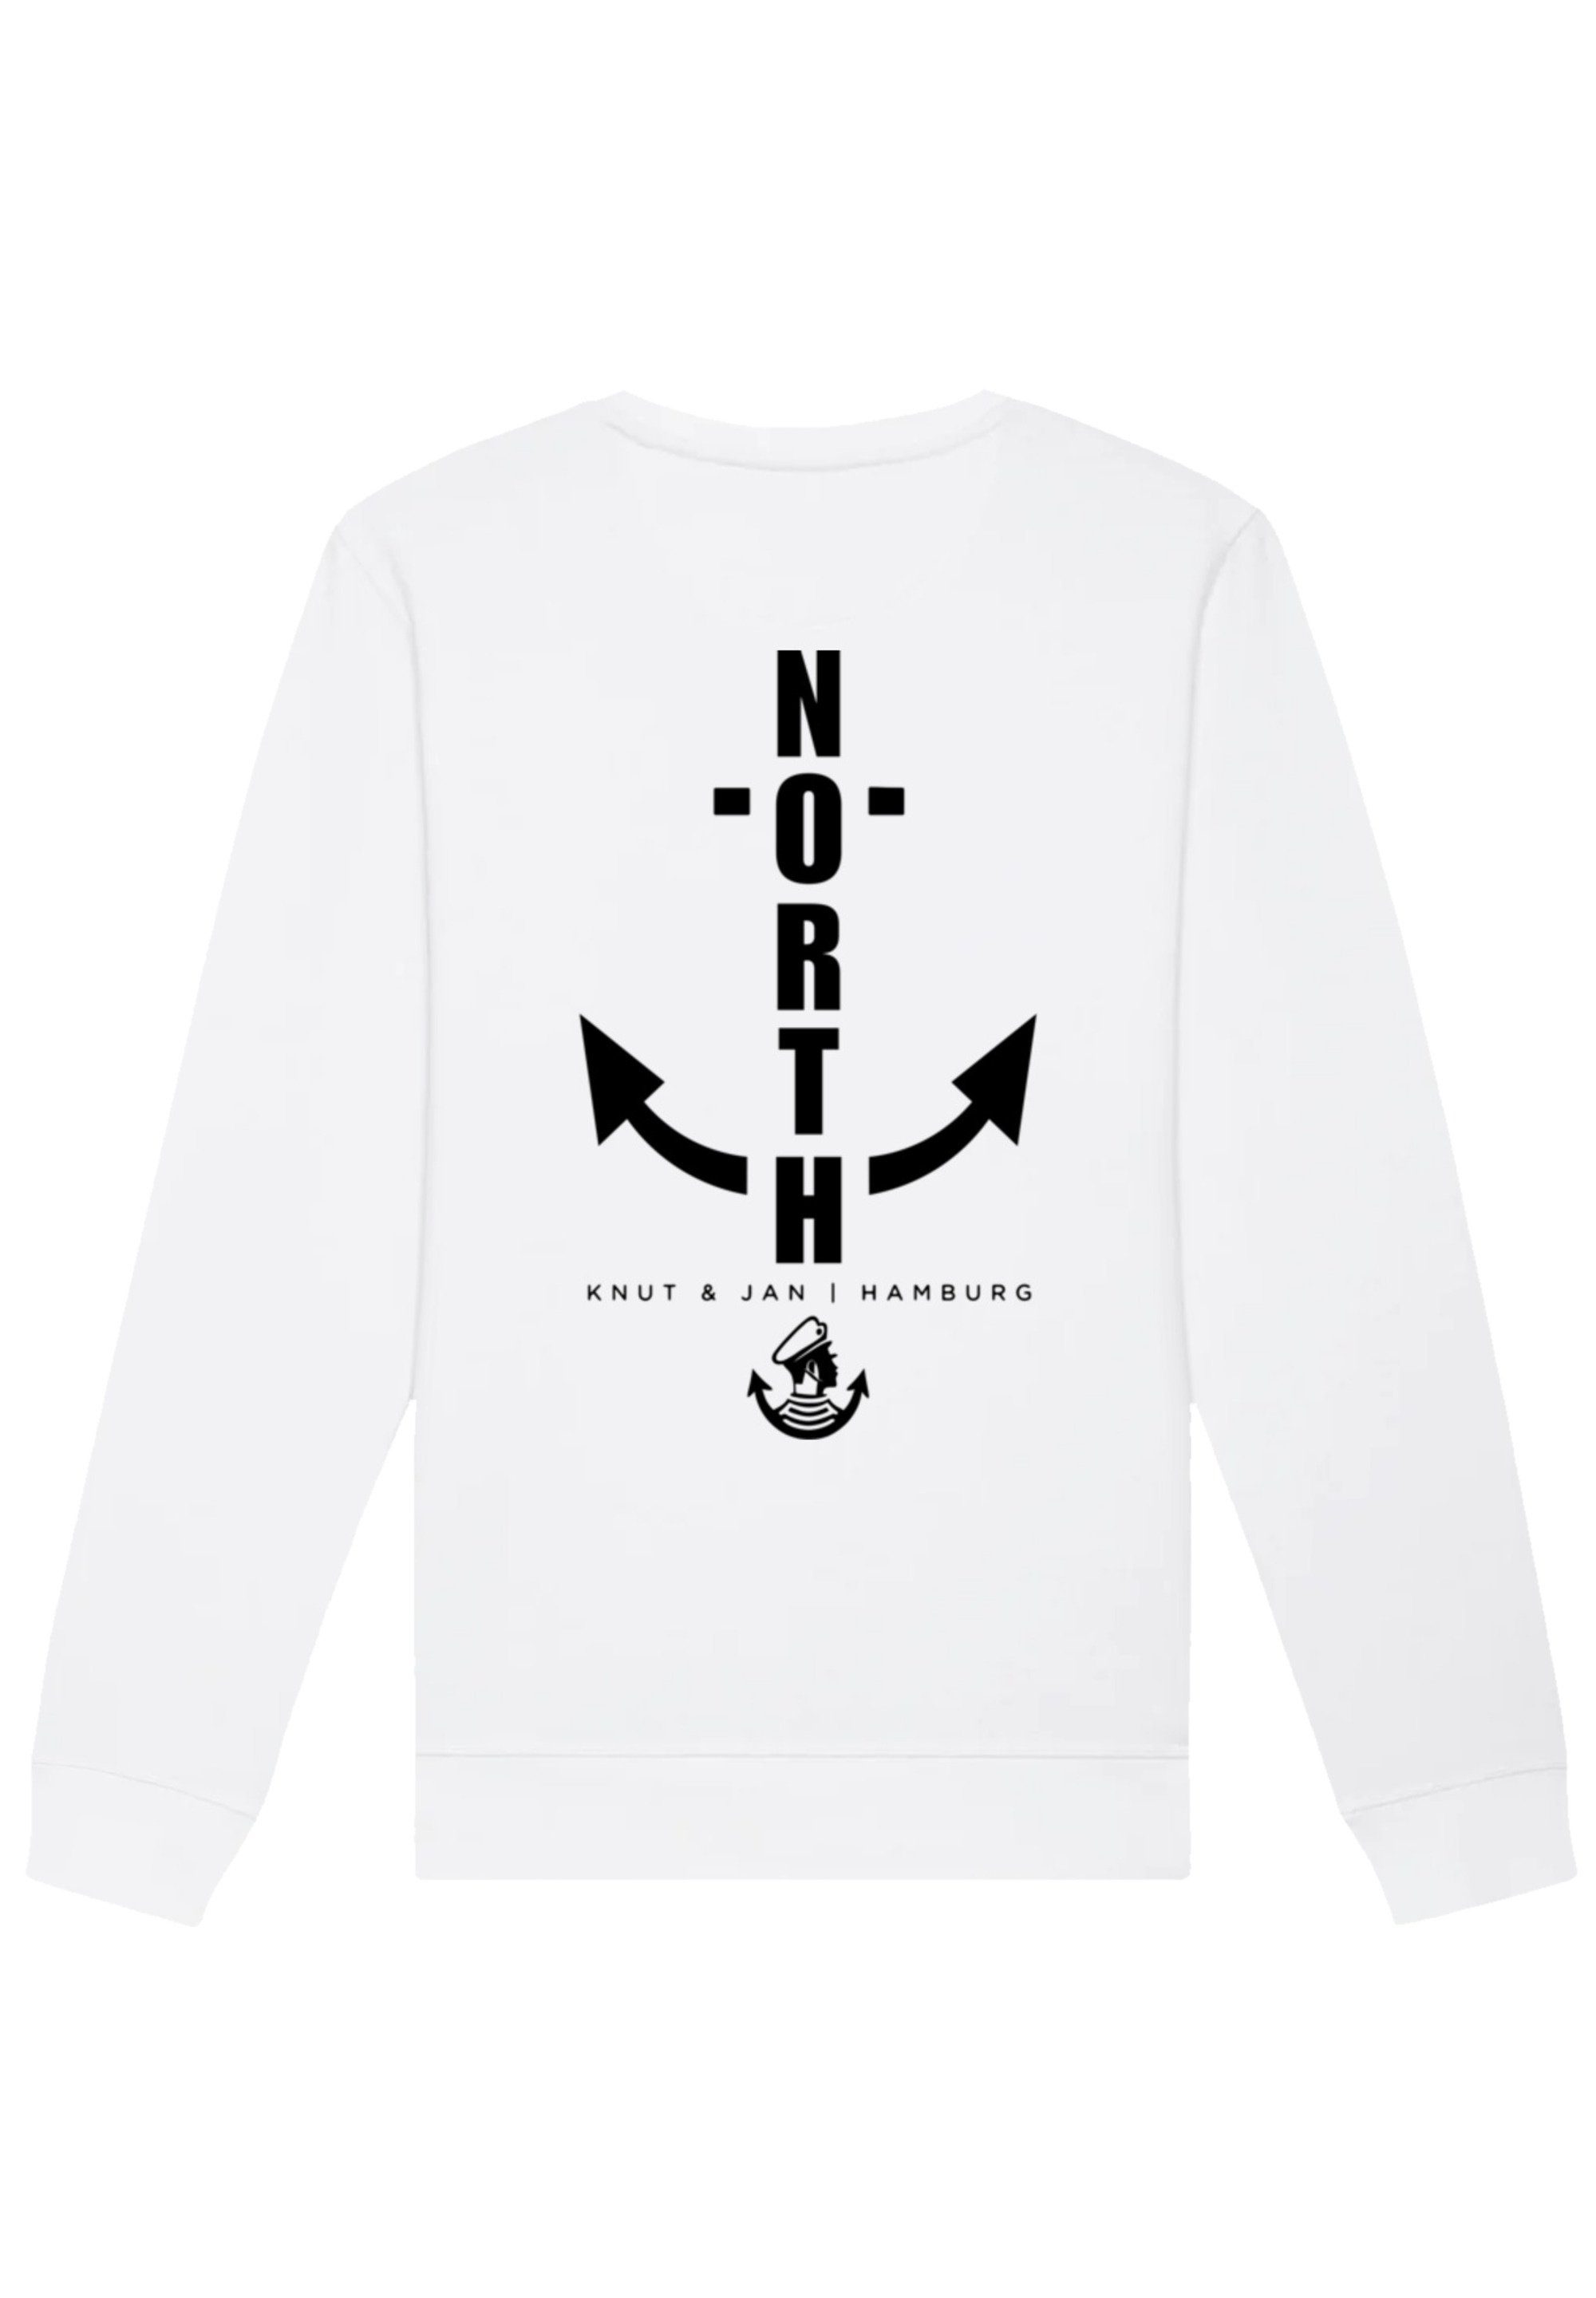 F4NT4STIC Sweatshirt North Anchor & Hamburg Knut weiß Jan Print